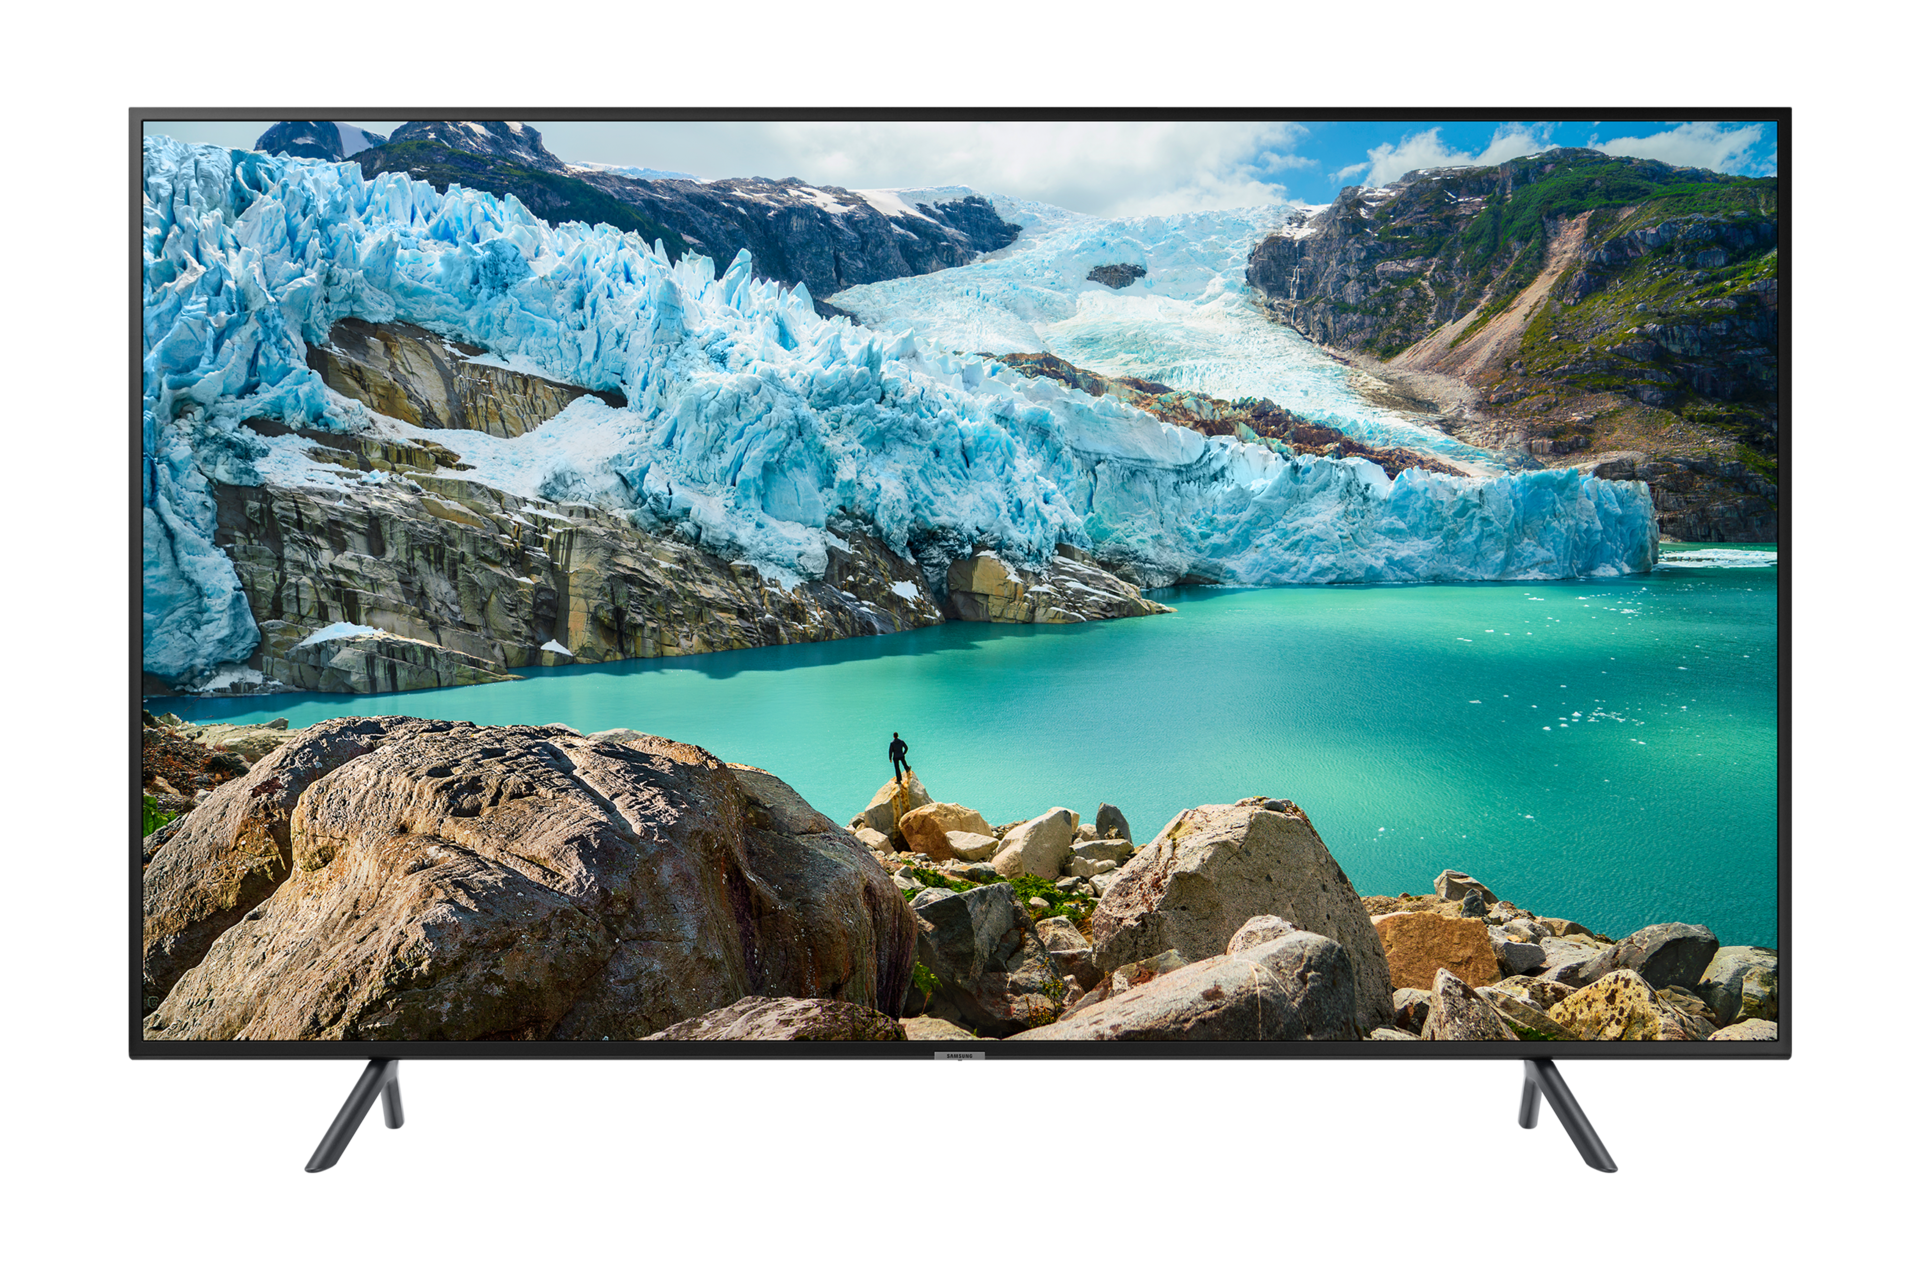 Lihat fitur Samsung TV 43 inch 4K RU7100 dengan resolusi 3840x2160 pixel. Ketahui spesifikasi lengkap Samsung 4K TV RU7100 di website Samsung Indonesia.